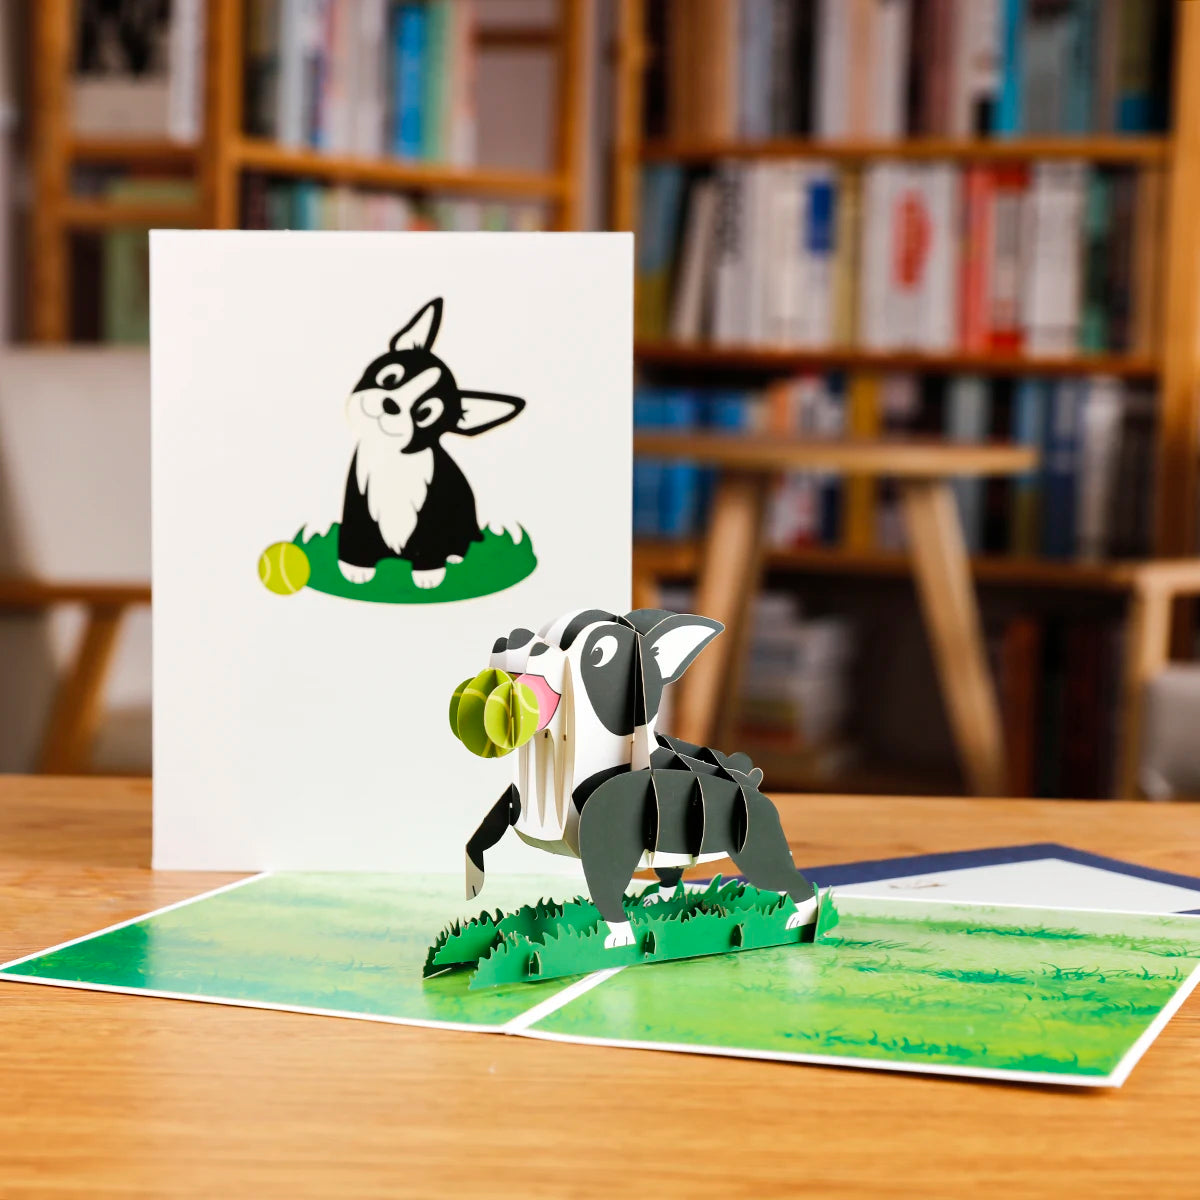 3D Animals Pop-up Cards: Butterflies, Unicorns, Cats & Dogs Gift  petlums.com   